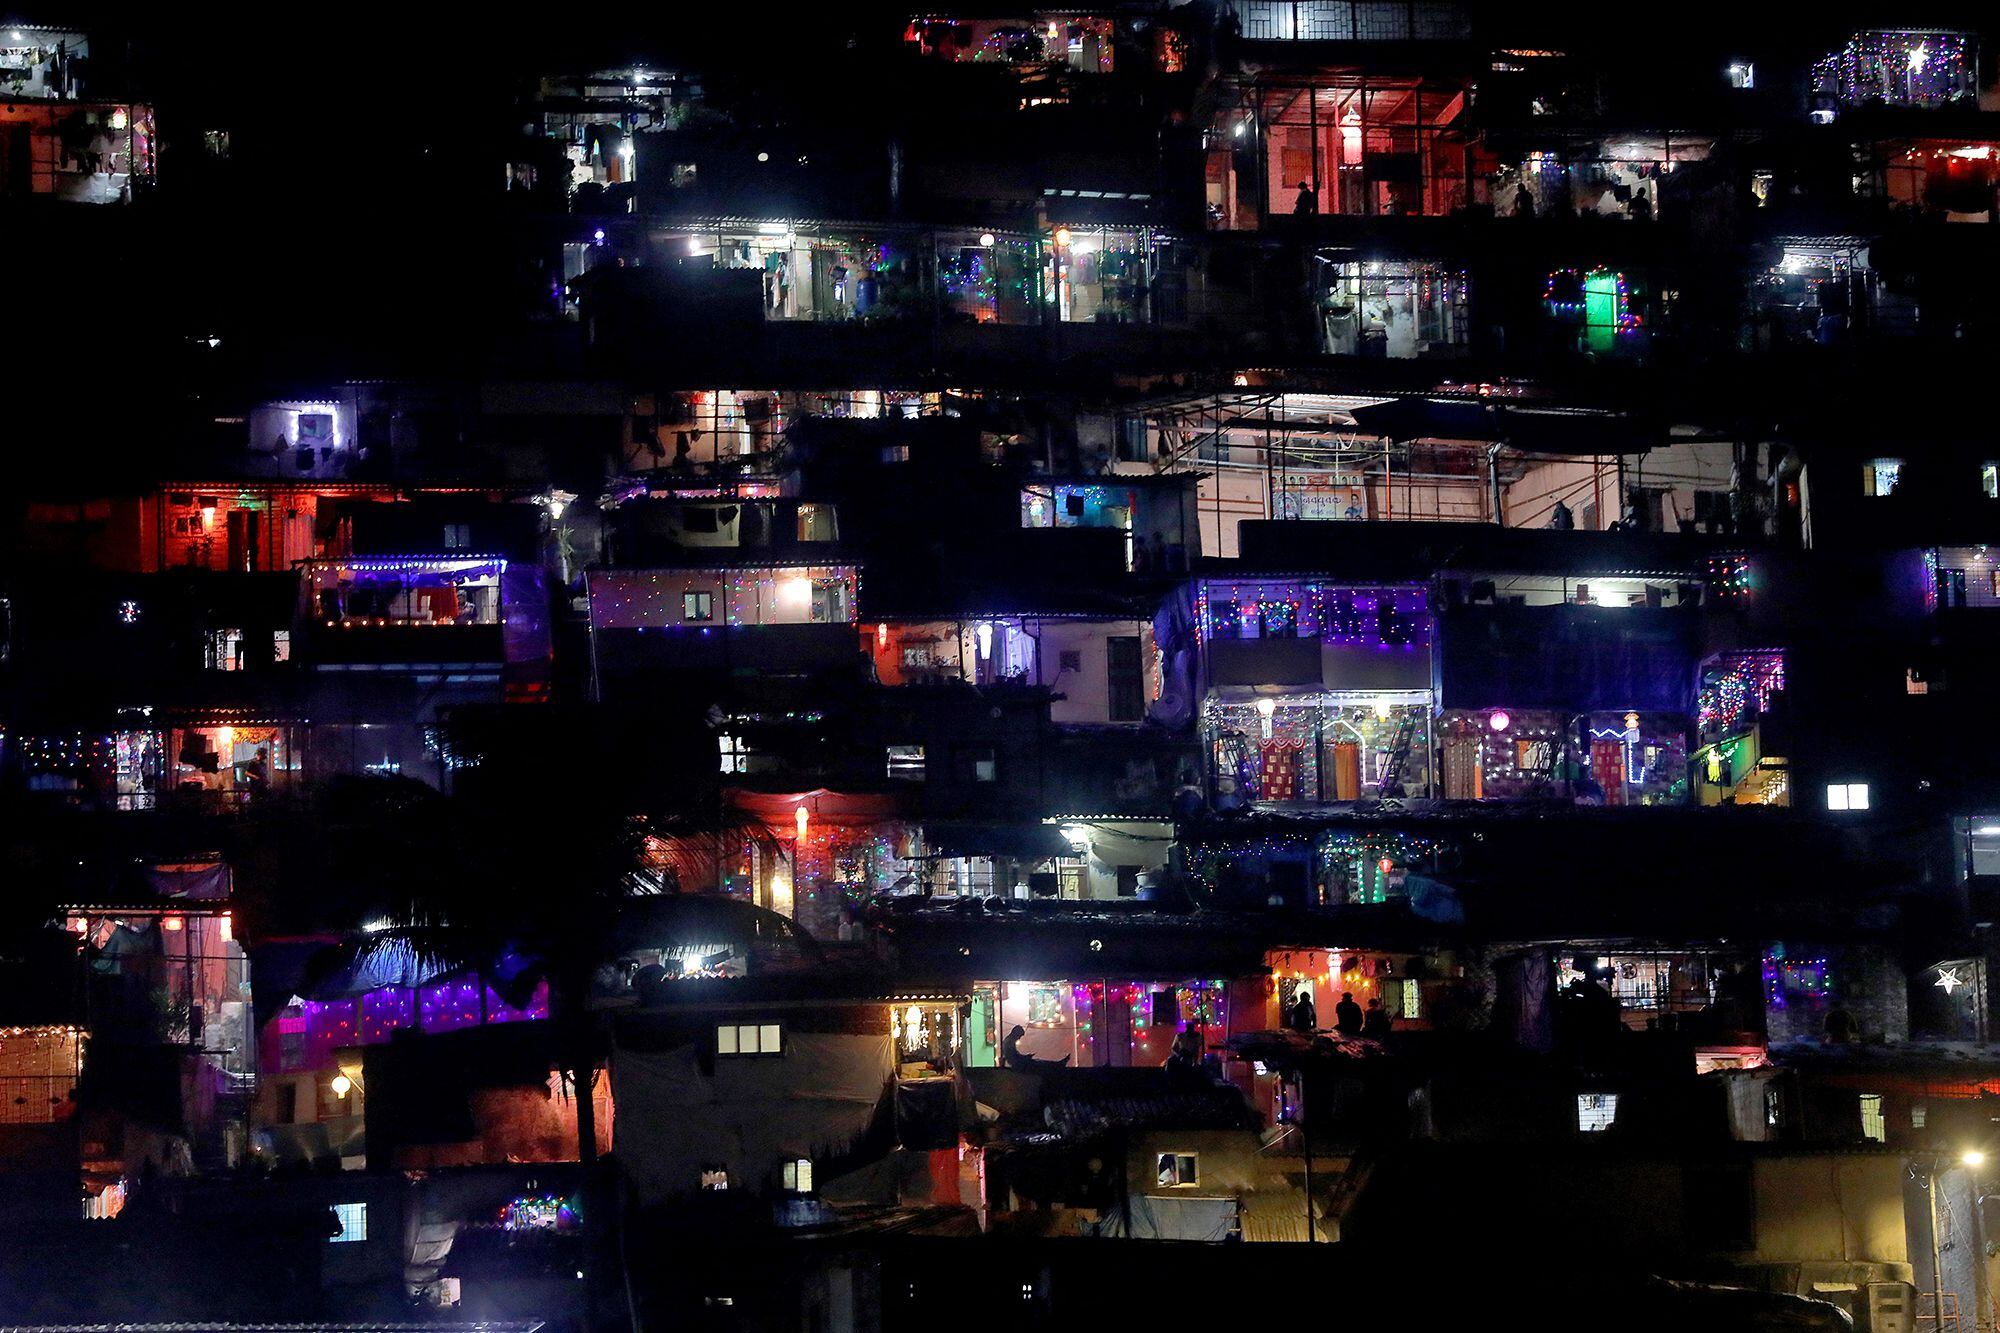 Un barrio humilde de la ciudad de Bombay, decorado con motivo de Diwali, el festival hindú de las luces.